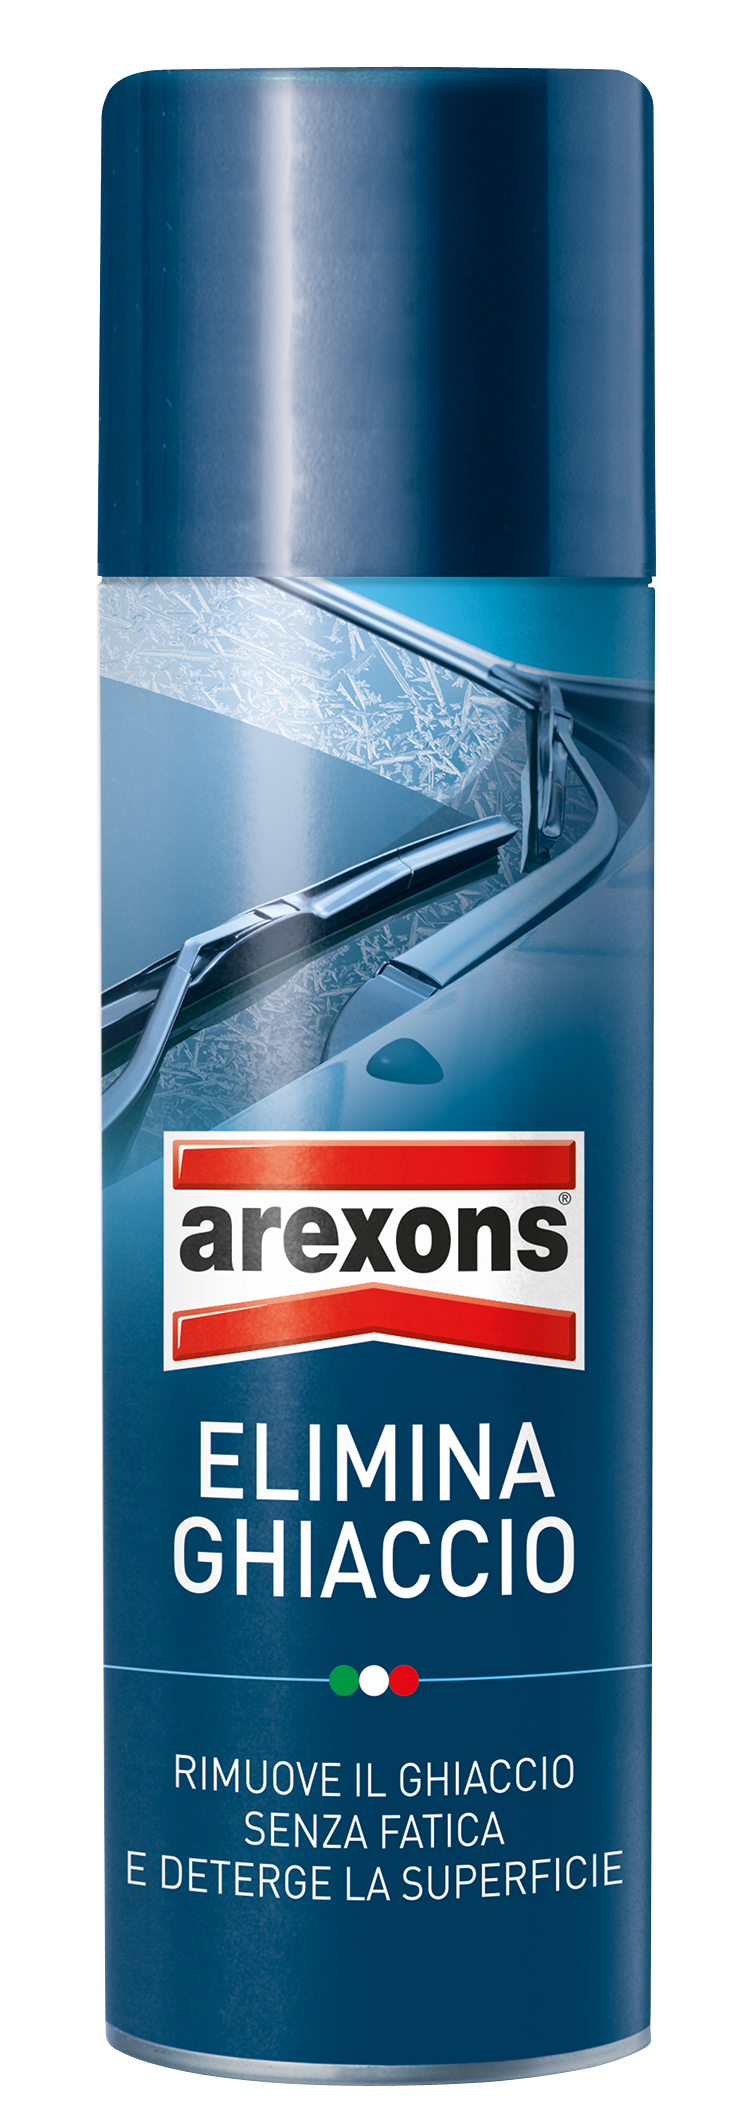 Arexons Elimina Ghiaccio Spray ml 300: prezzi e offerte